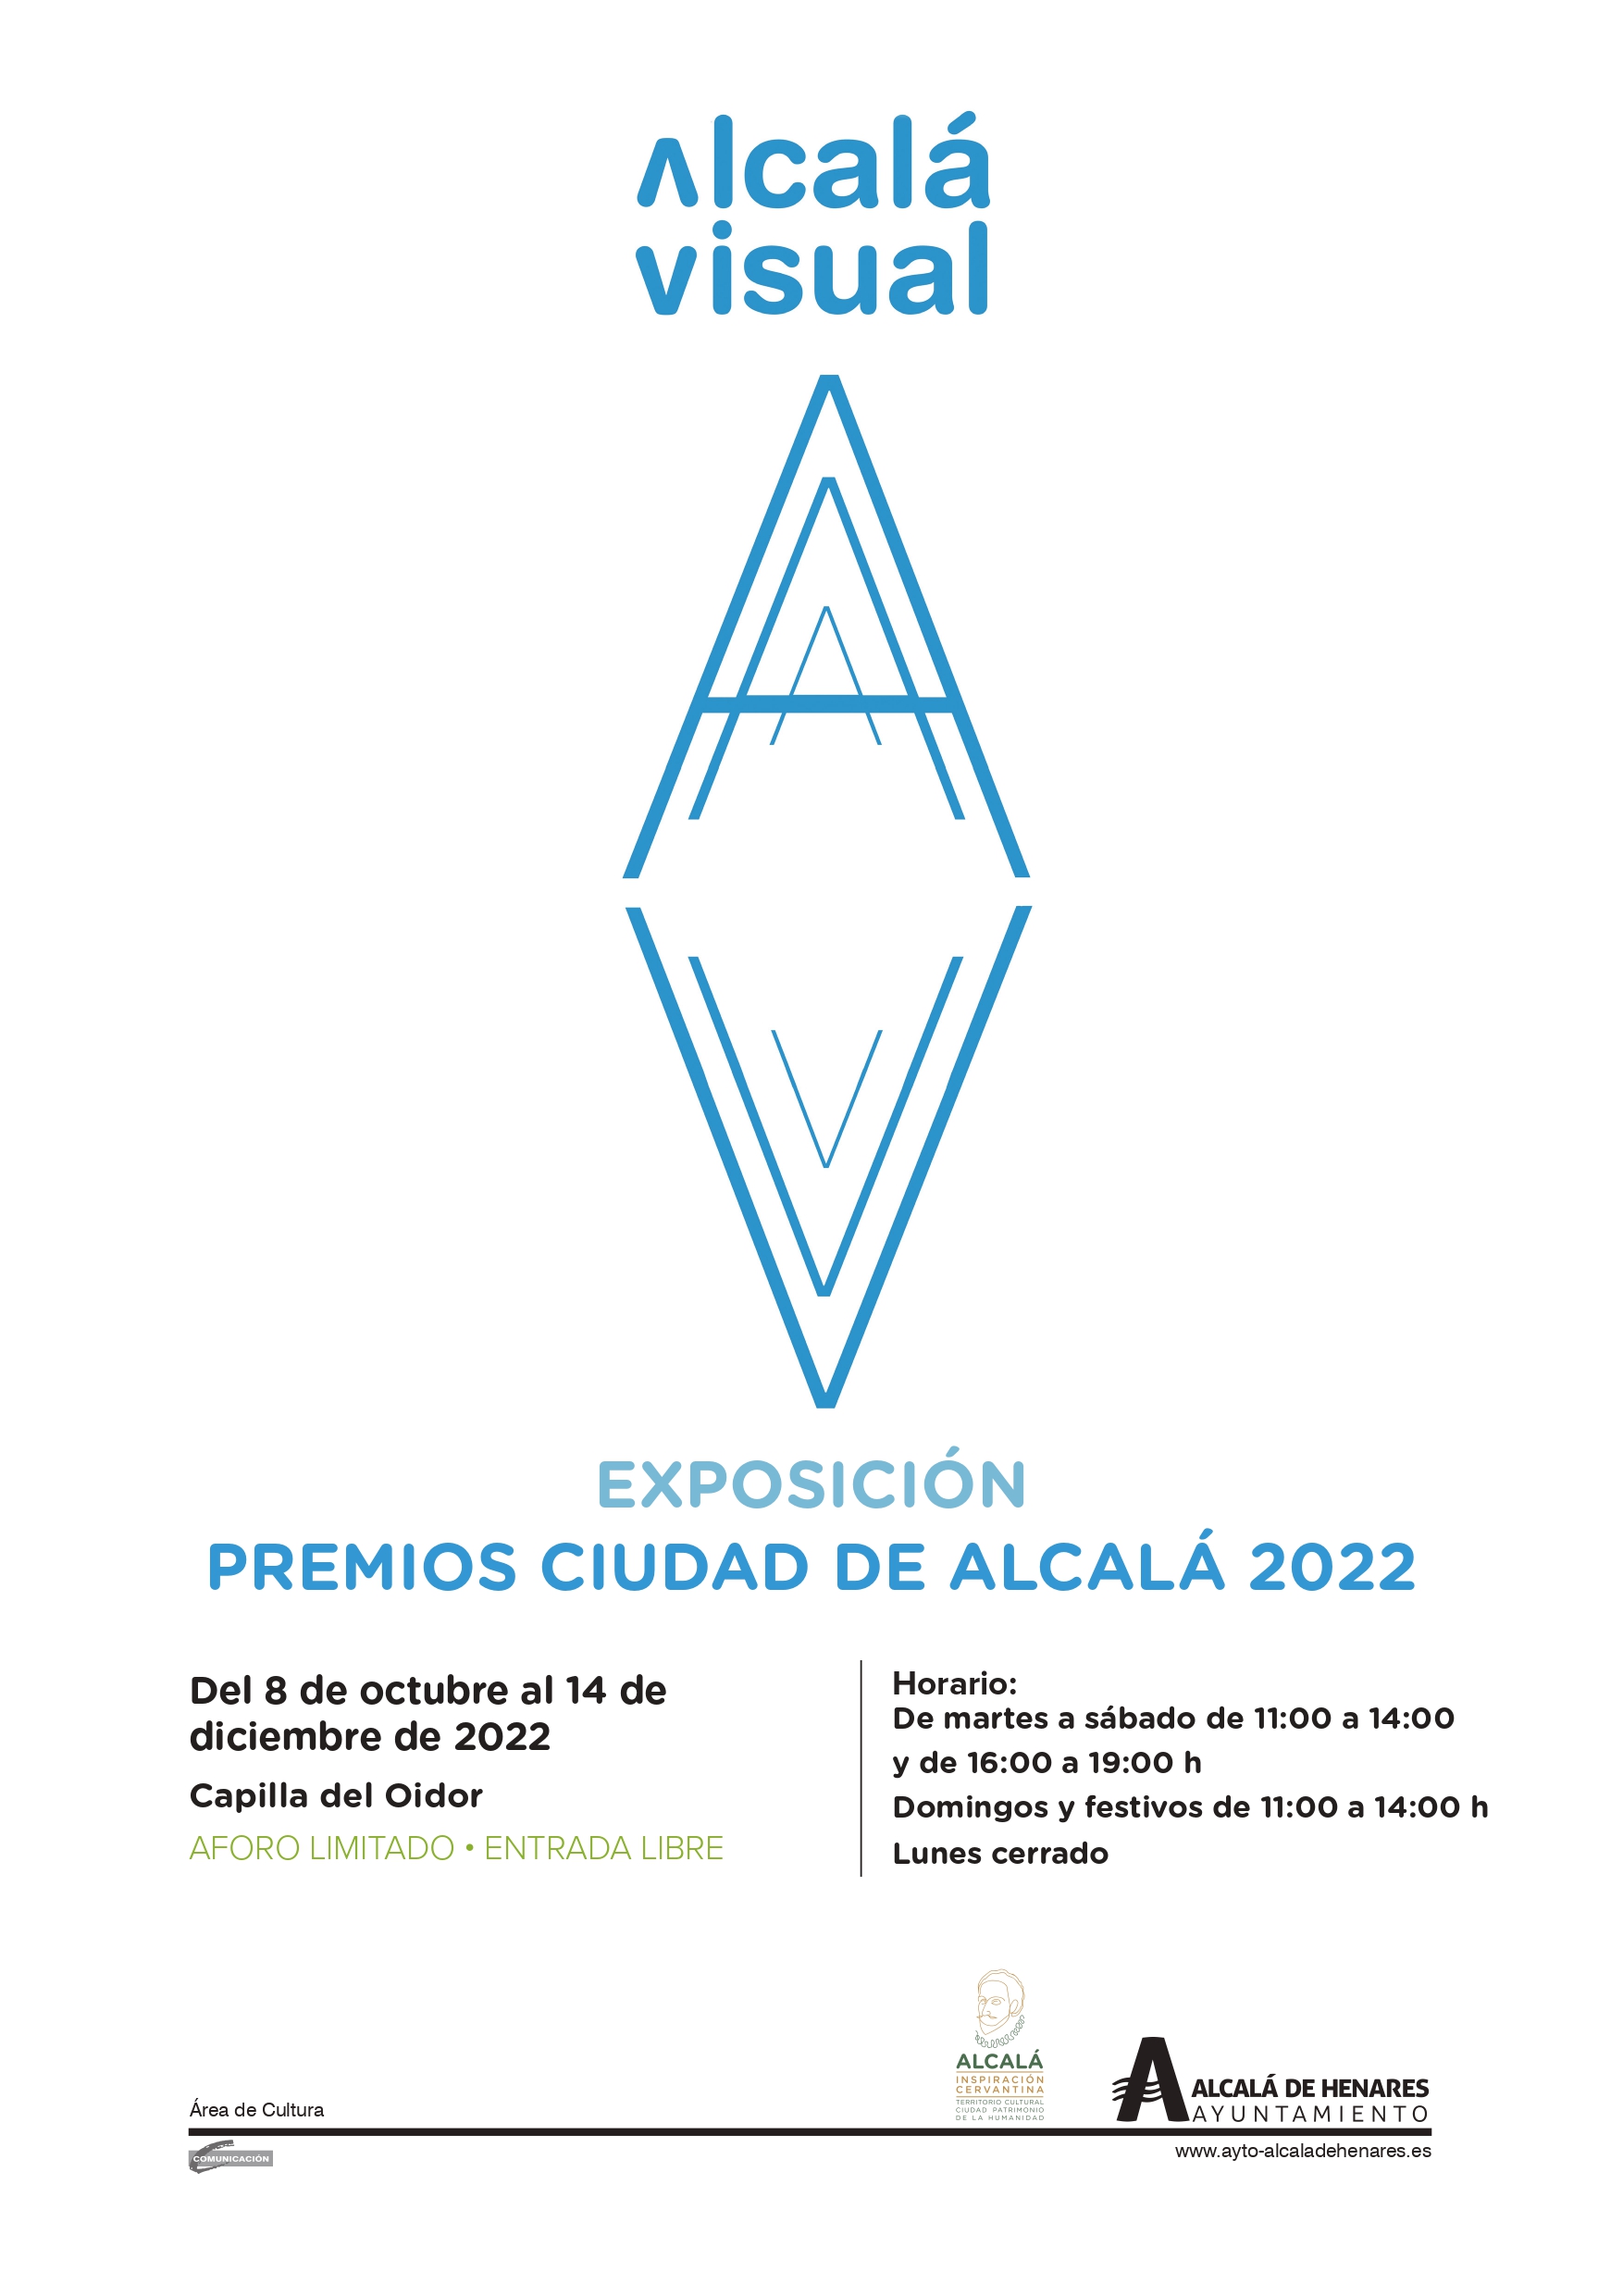 Alcalá Visual 2022